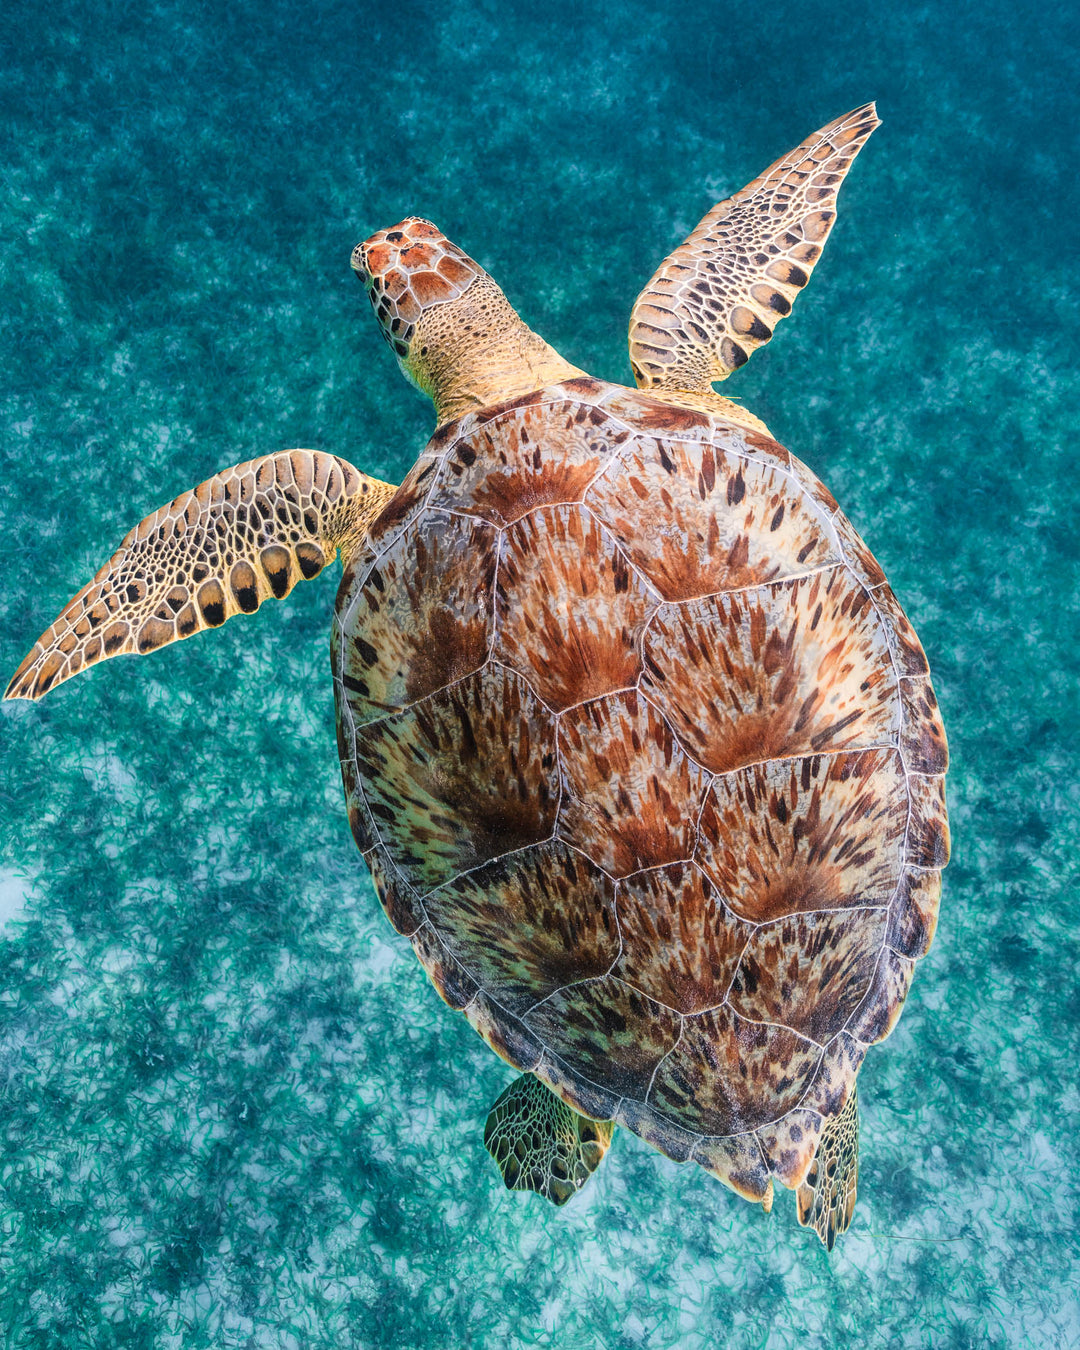 Green sea turtle off the coast of St. Thomas